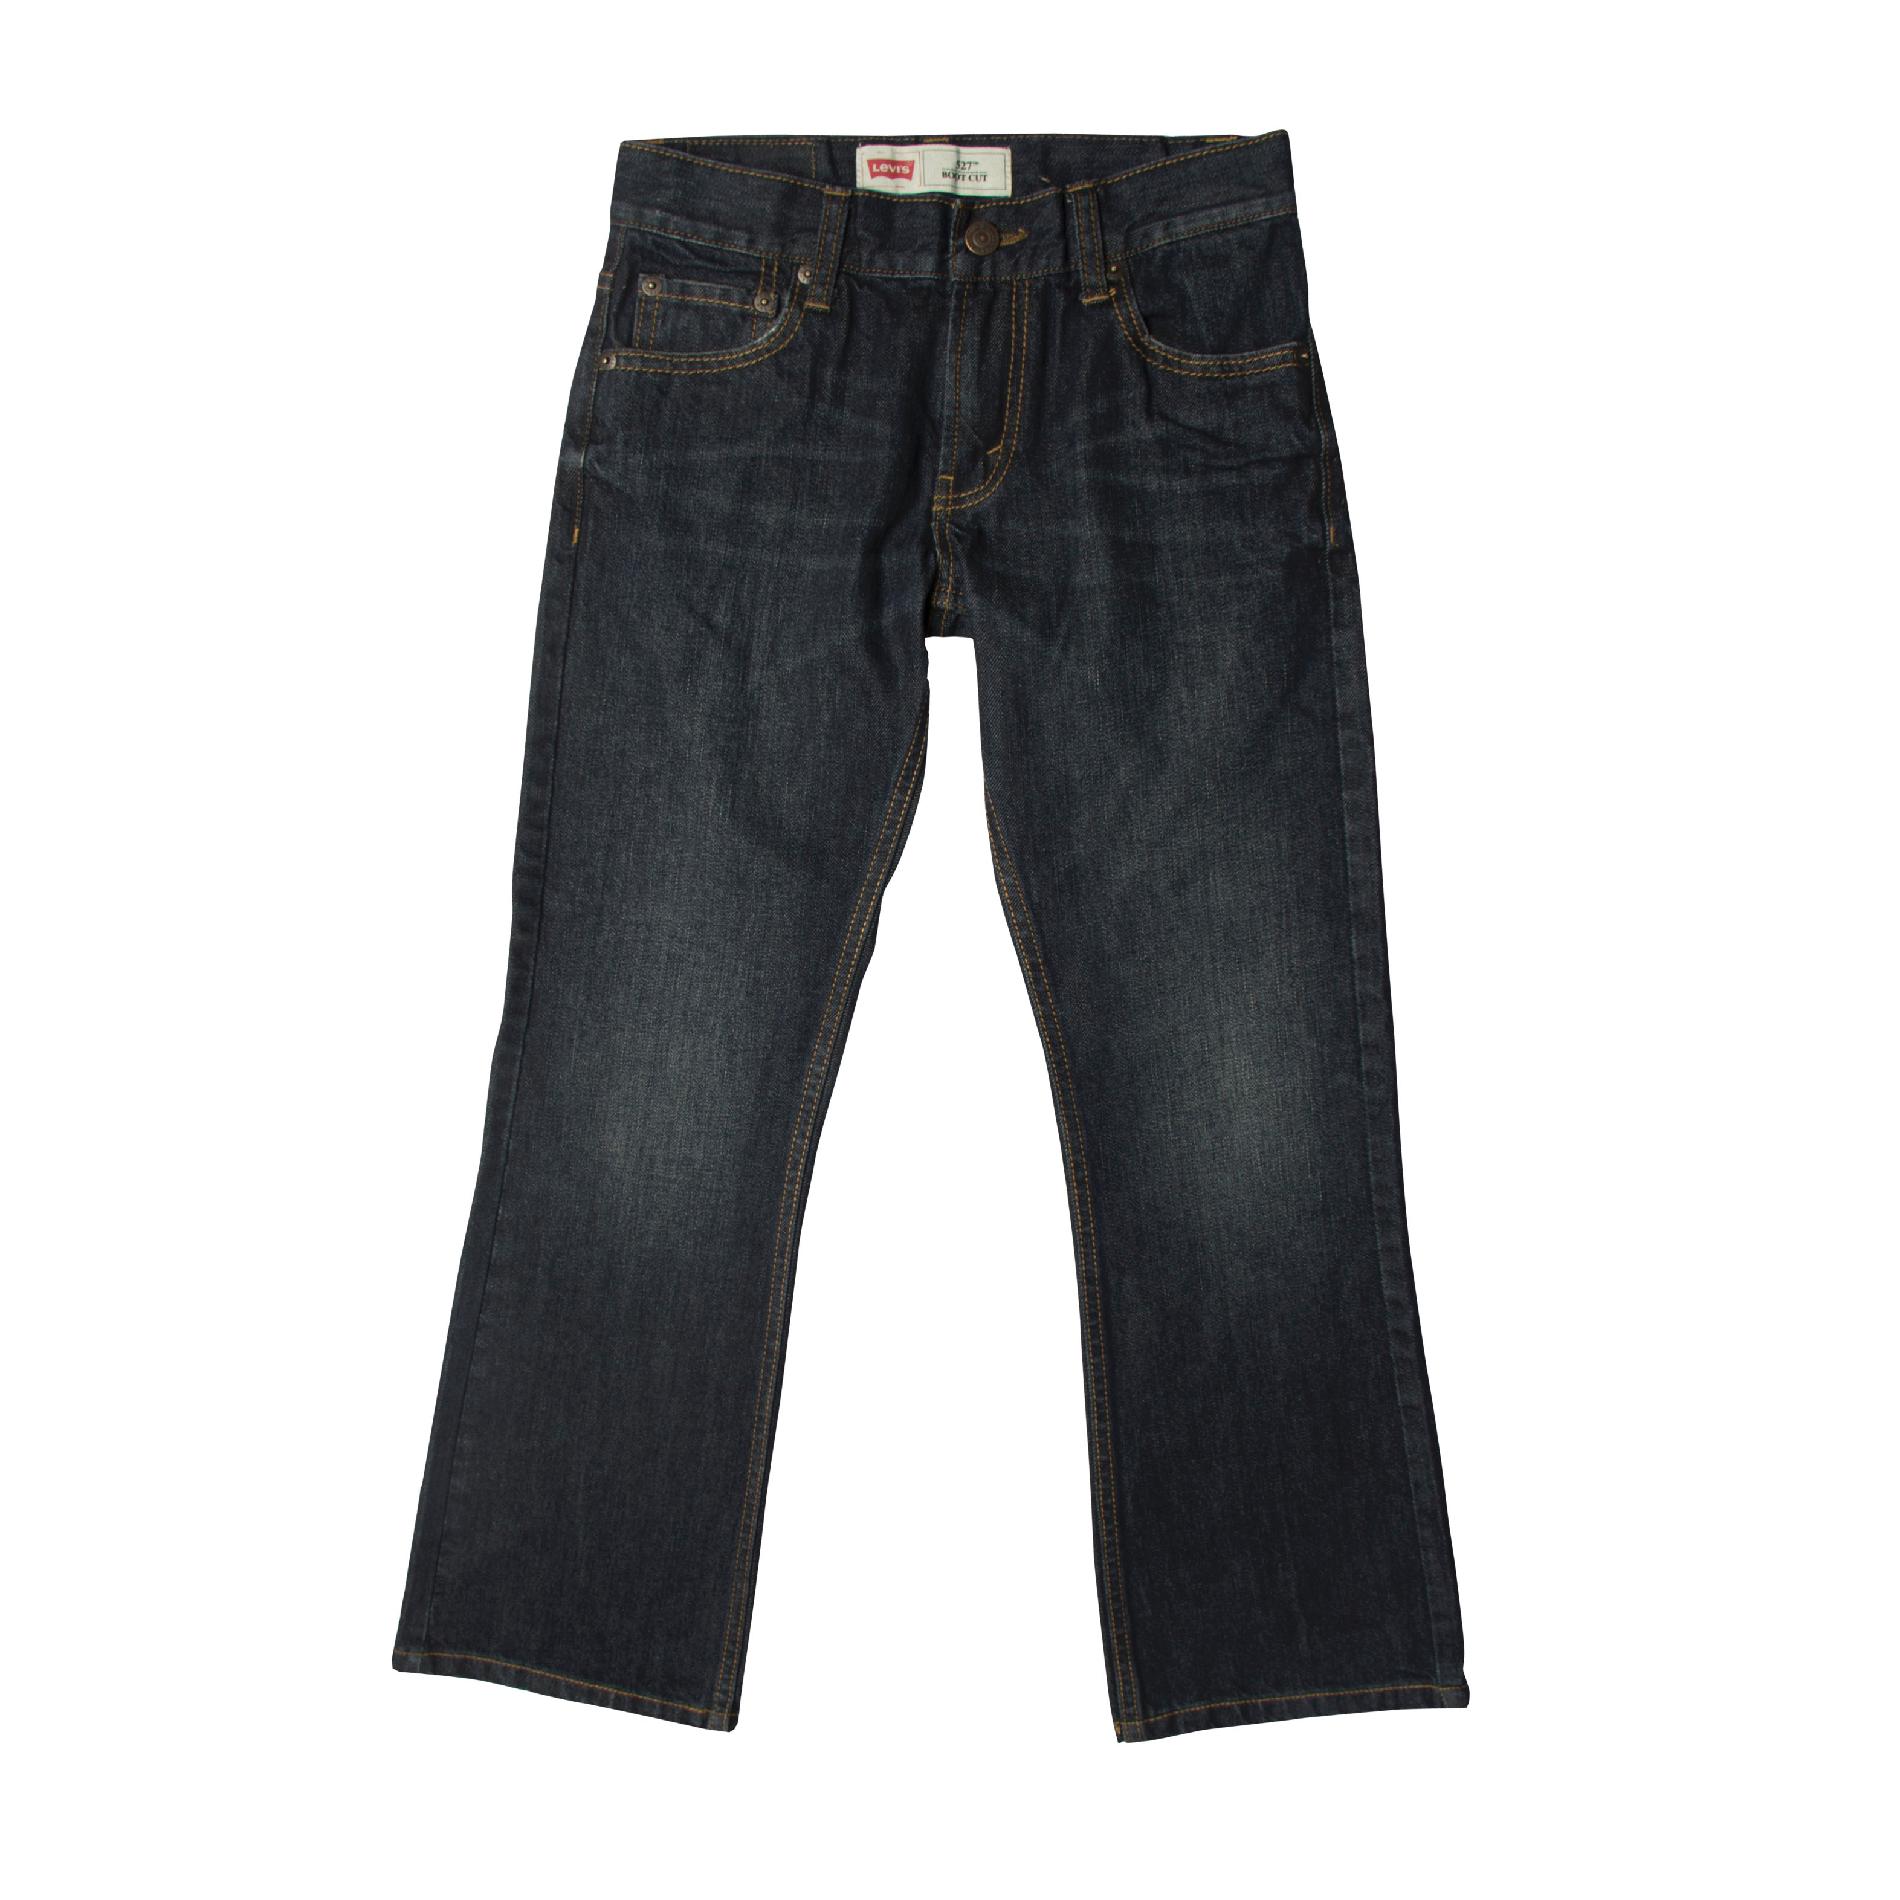 Levi's Boy's Jeans - 527